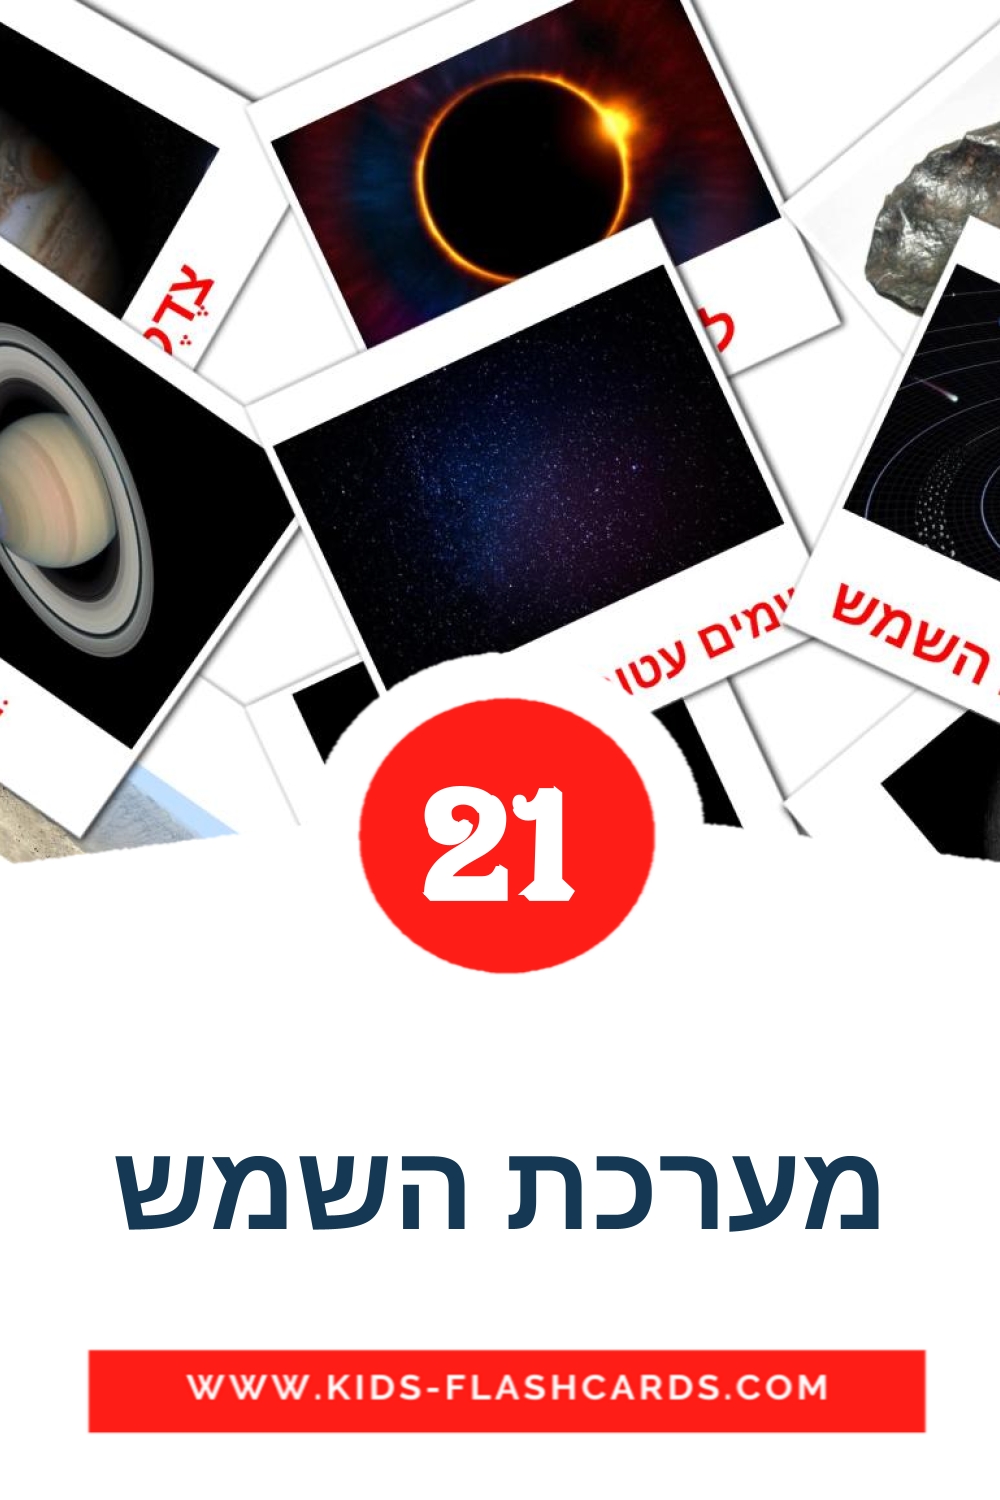 21 Cartões com Imagens de מערכת השמש para Jardim de Infância em hebraico